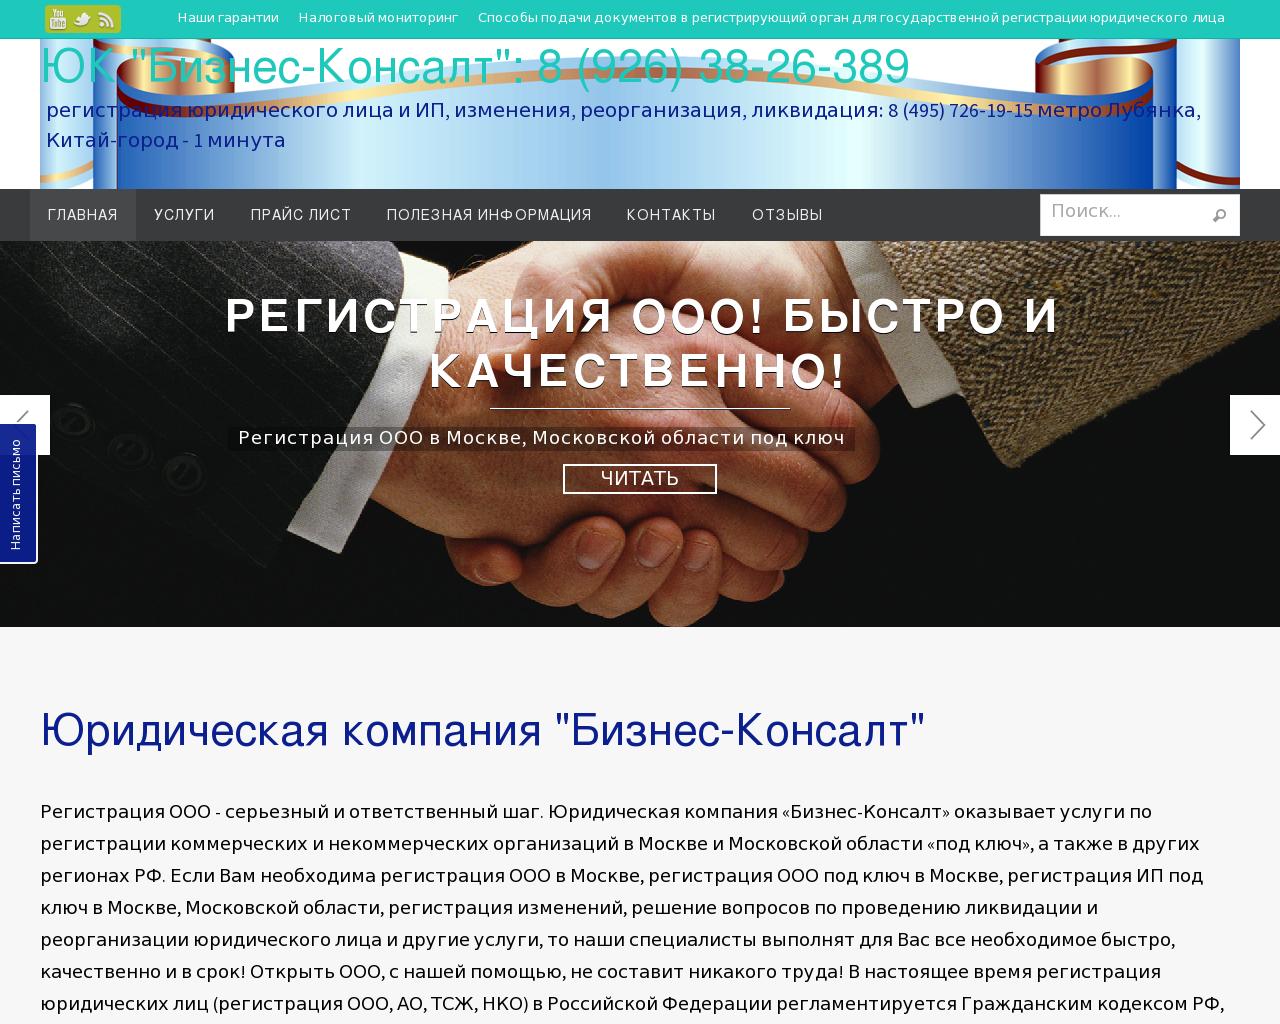 Изображение сайта mosregistration.ru в разрешении 1280x1024